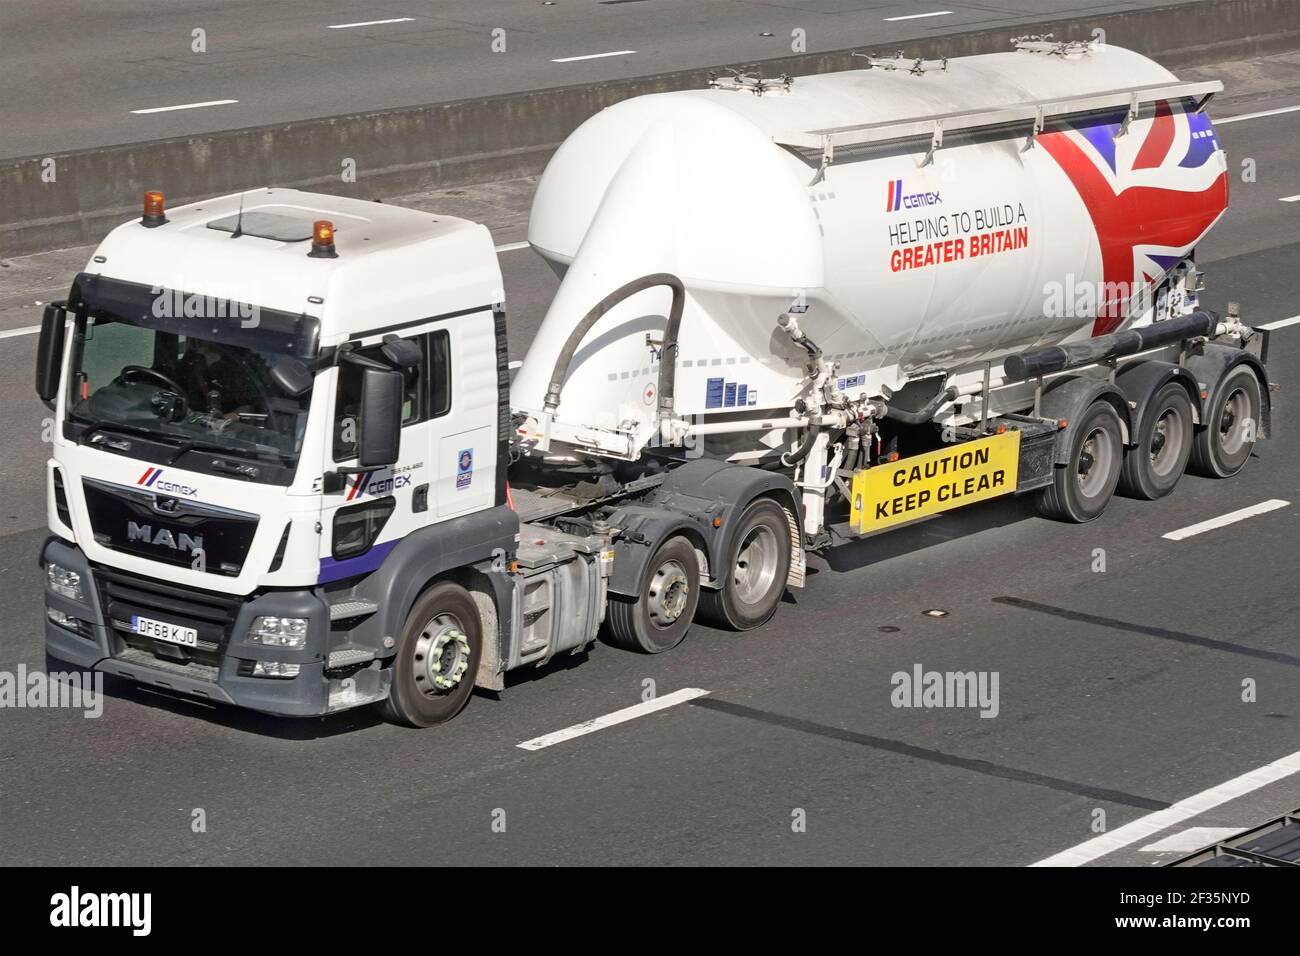 Cemex lkw-LKW-LKW-LKW und Schüttgut Zement Trockenpulver Artikulierter Tankwagen Anhänger Förderung bauen eine Greater Britain Union Jack Flaggengrafik auf der britischen Autobahn Stockfoto